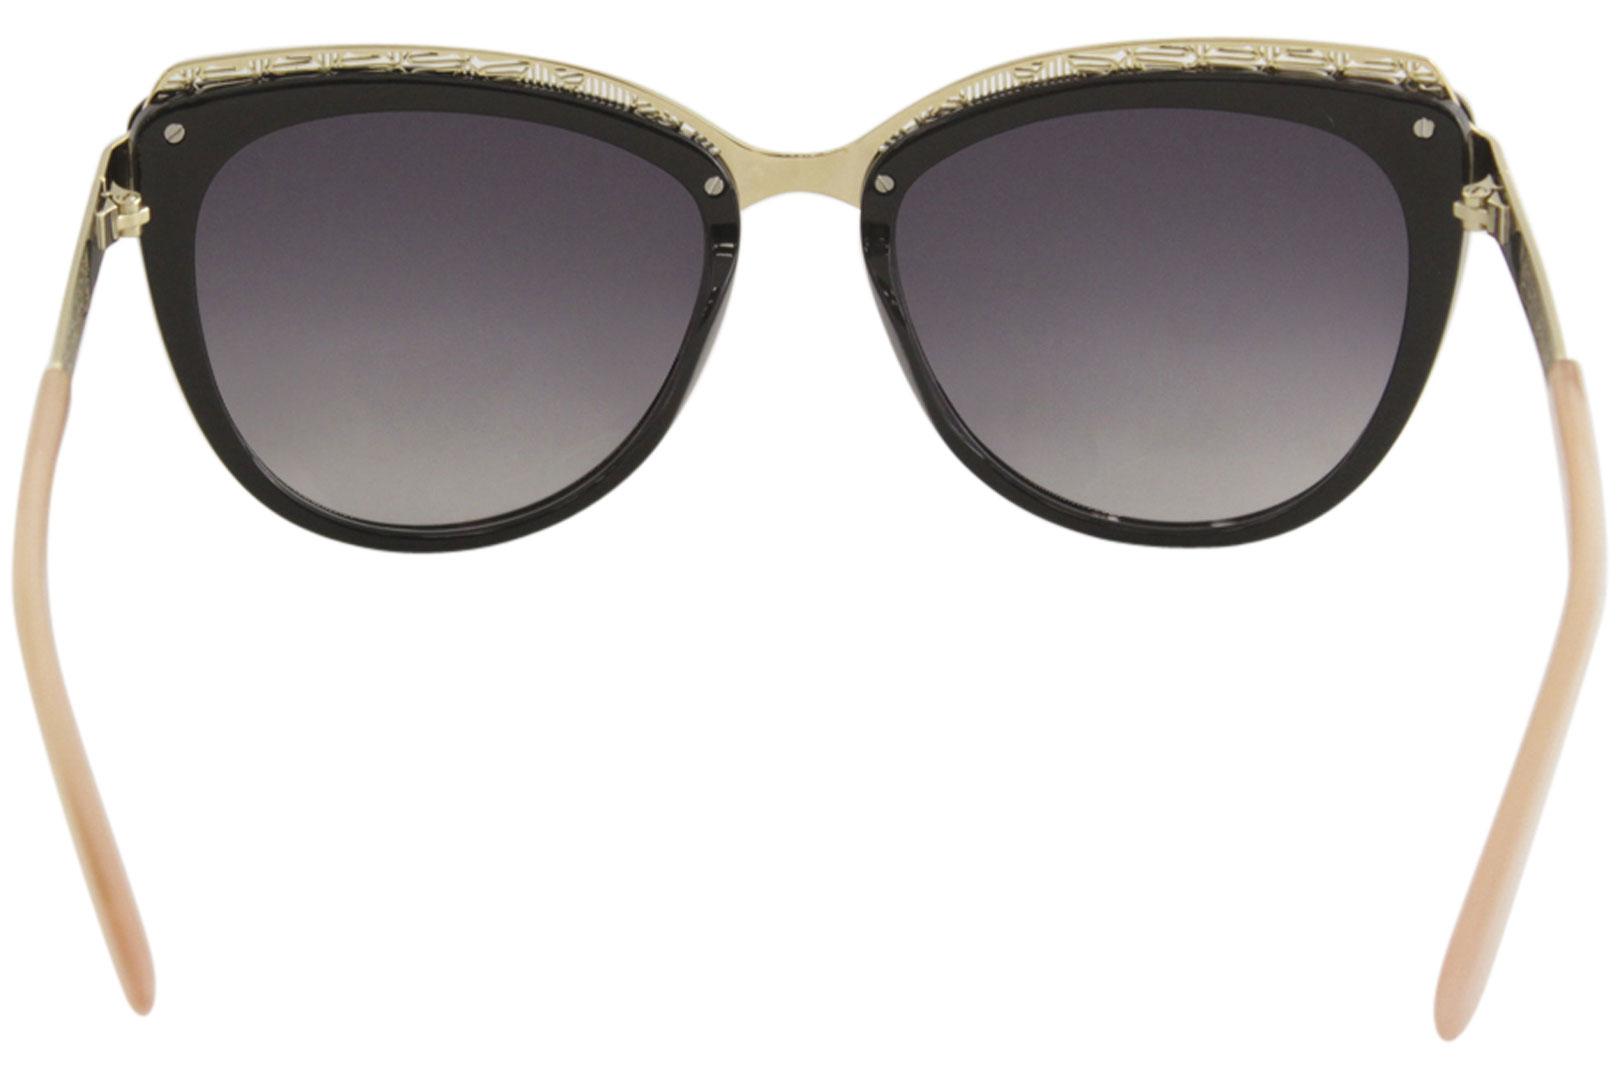 Calliope Cat Eye Sunglasses – Aveney